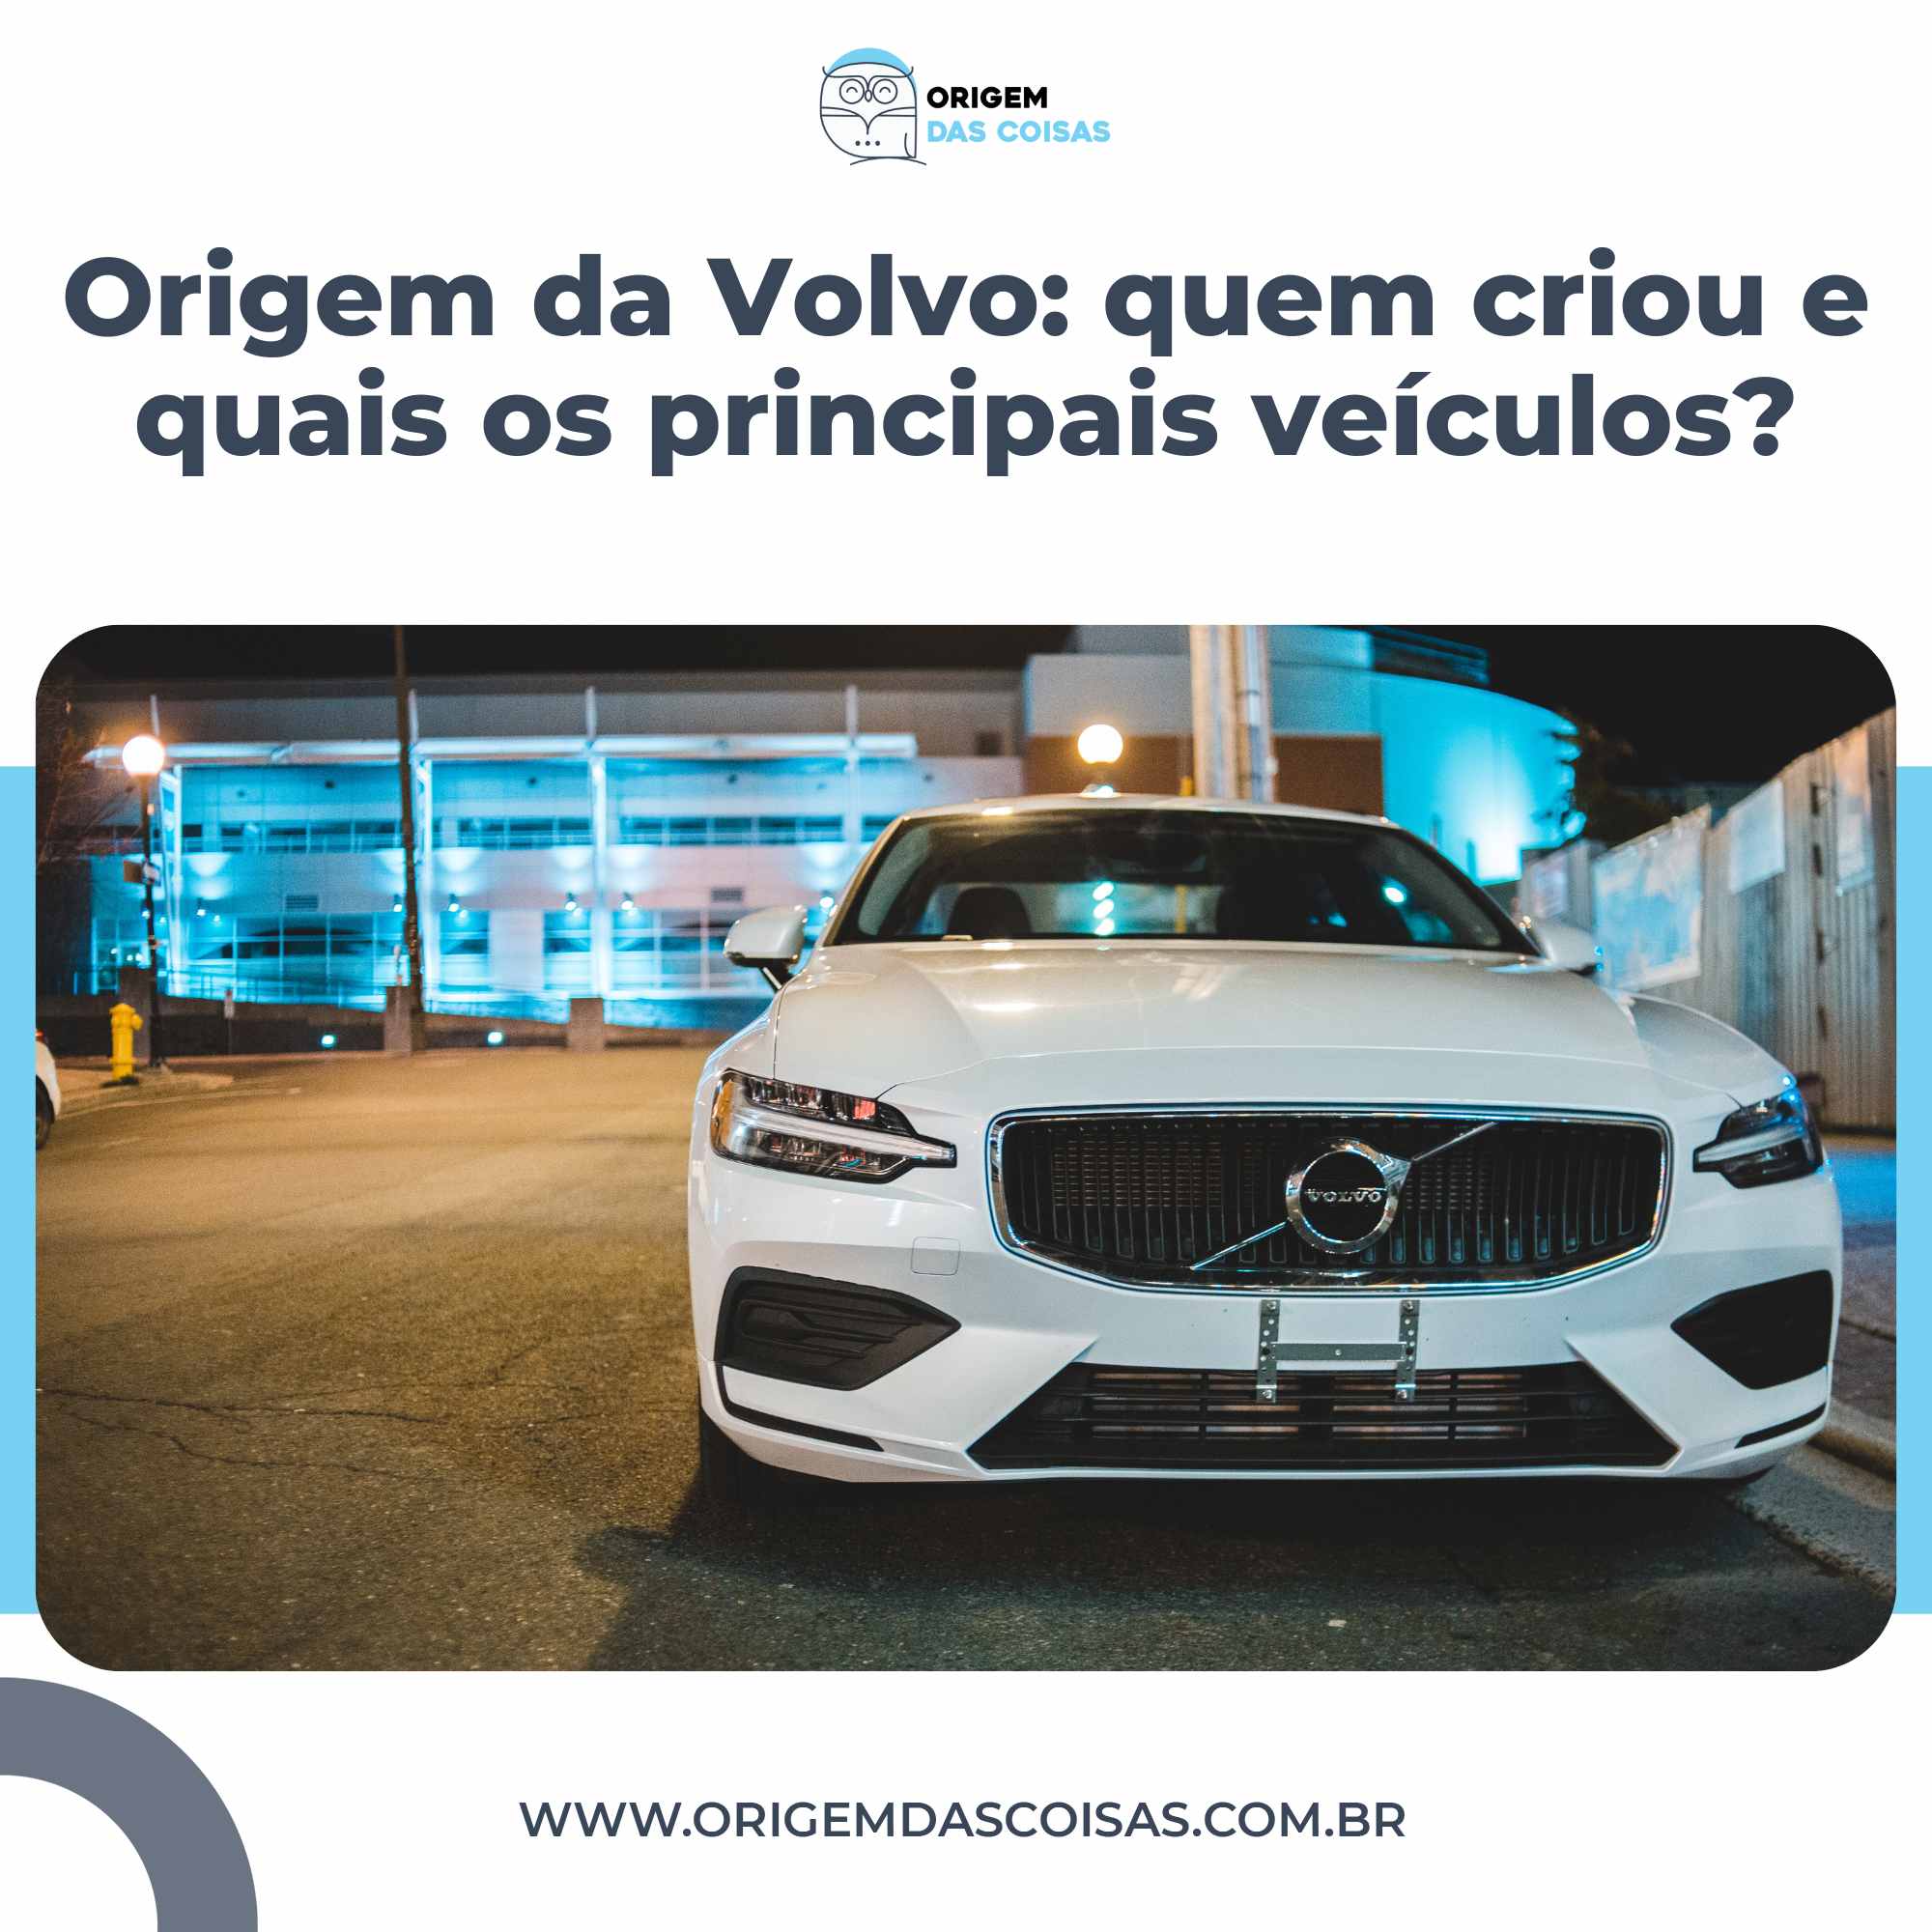 Origem da Volvo quem criou e quais os principais veículos